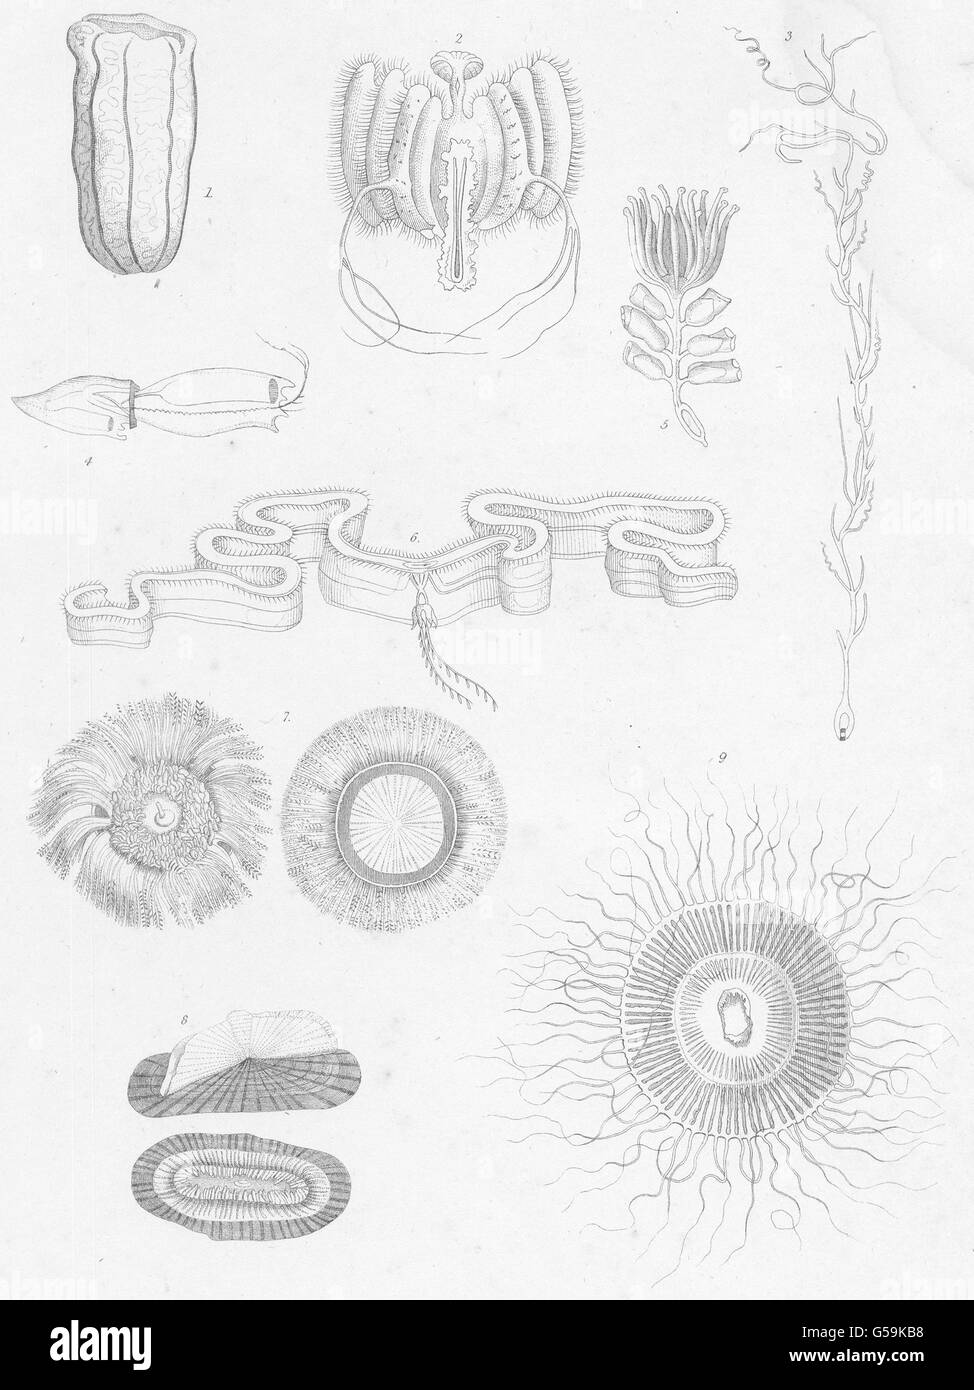 ACALEPHAE: Stara Zagora macrostoma; Janira hexagona; Rhizophysa planostoma, 1860 Stock Photo